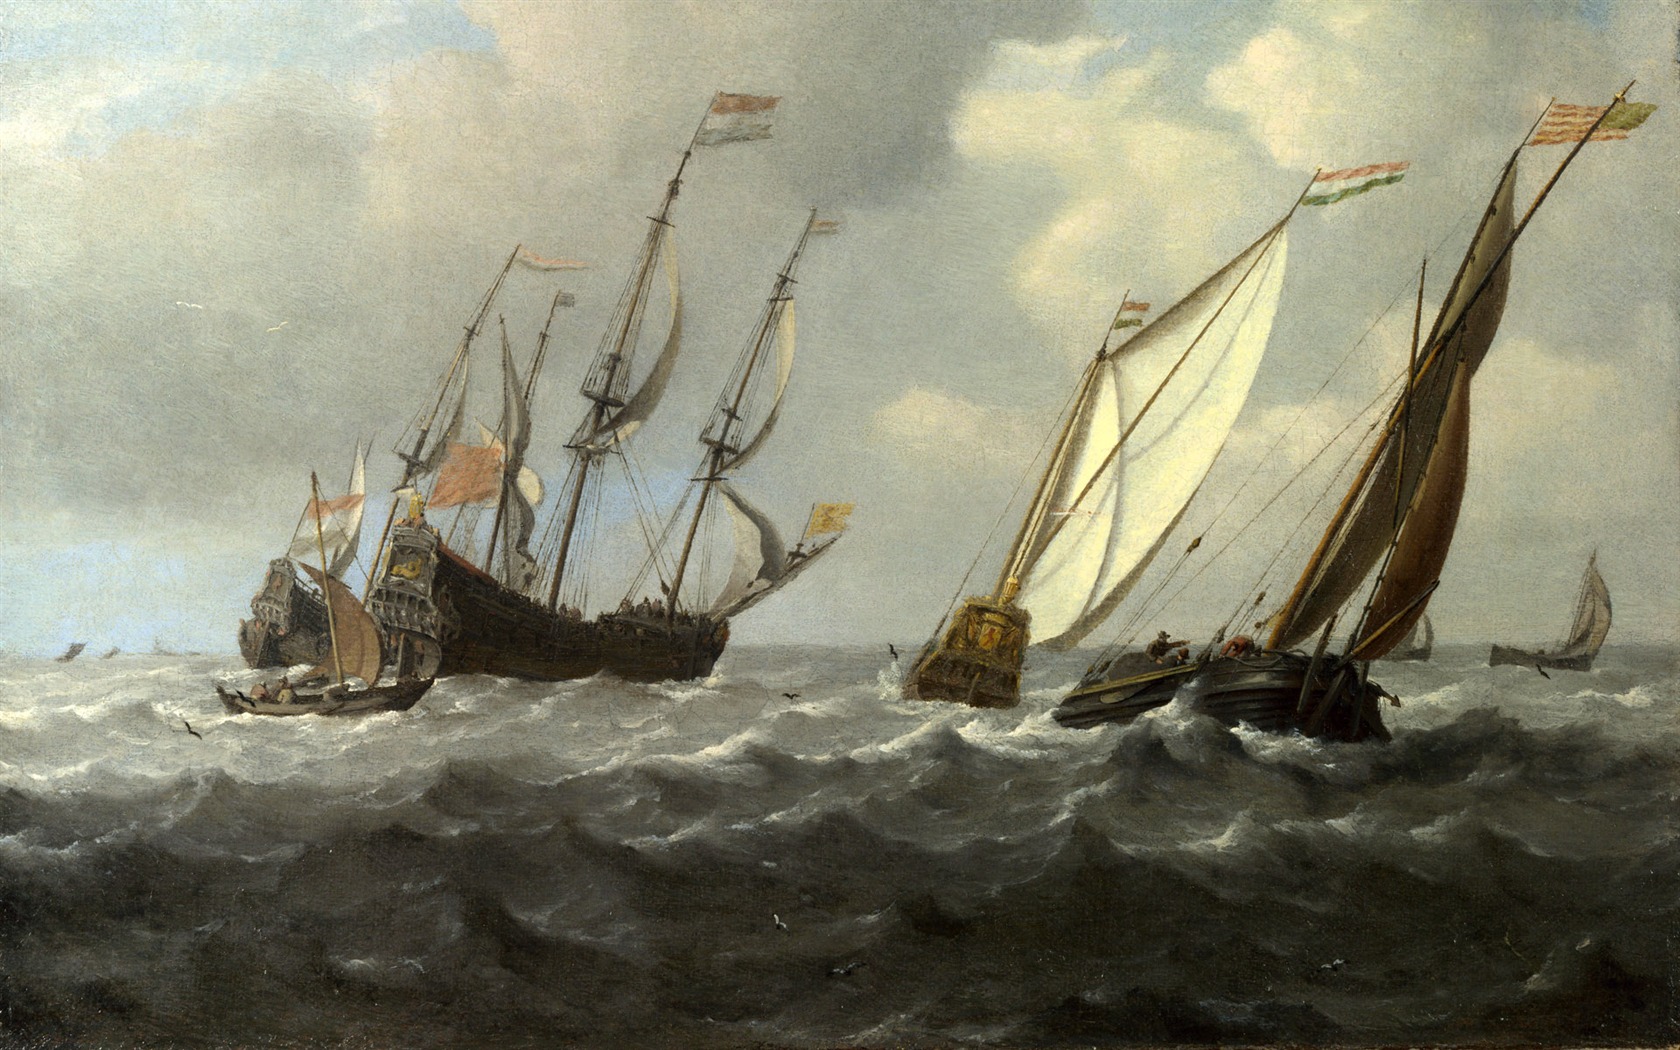 伦敦画廊帆船 壁纸(二)1 - 1680x1050